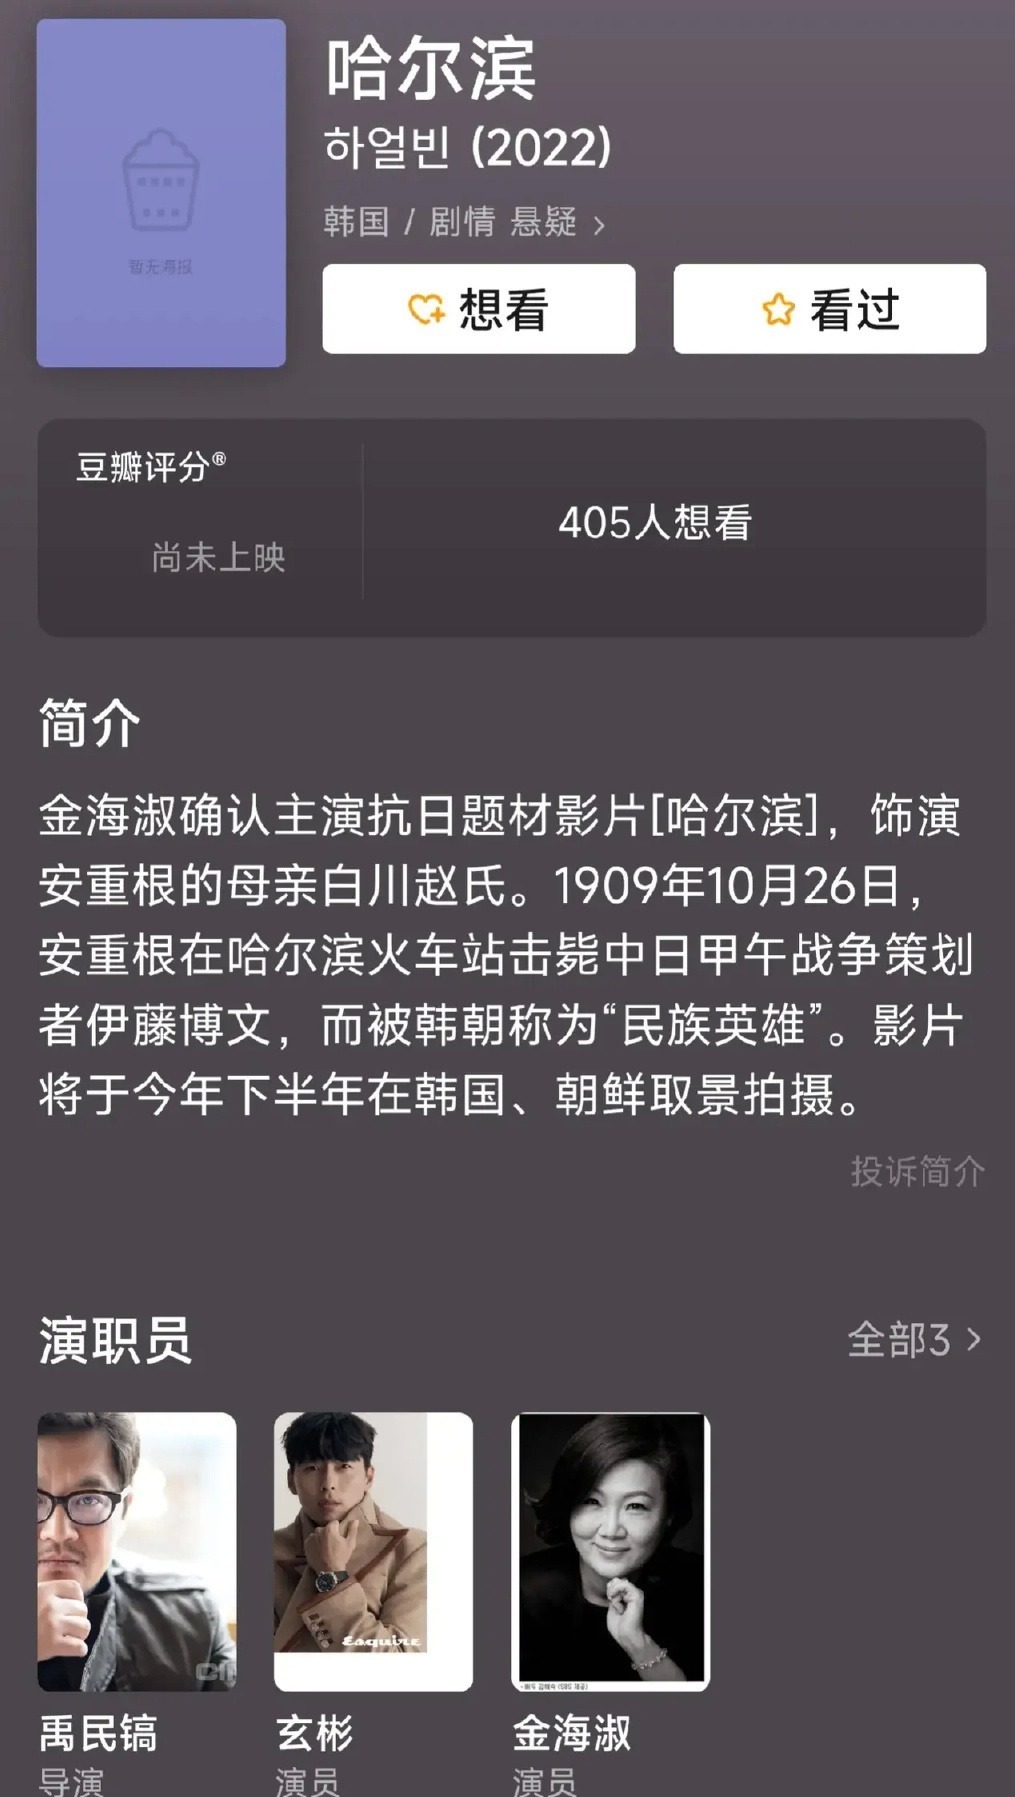 全汝彬确认出演韩国抗日影片《哈尔滨》 该片于今年9月开拍 